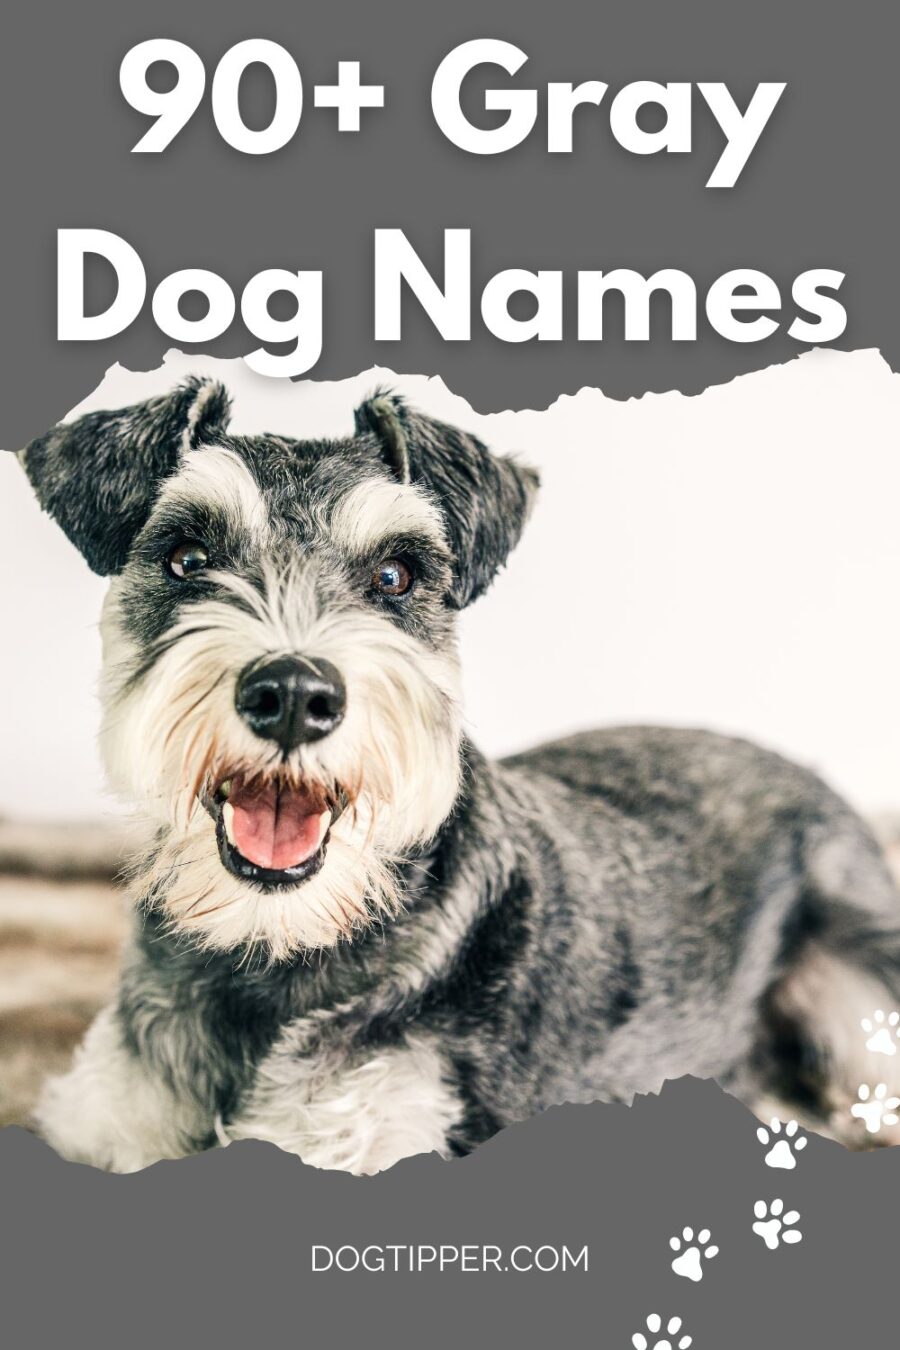 Hơn 90 tên chó cho chú chó con màu bạc của bạn!  #chó #dognames